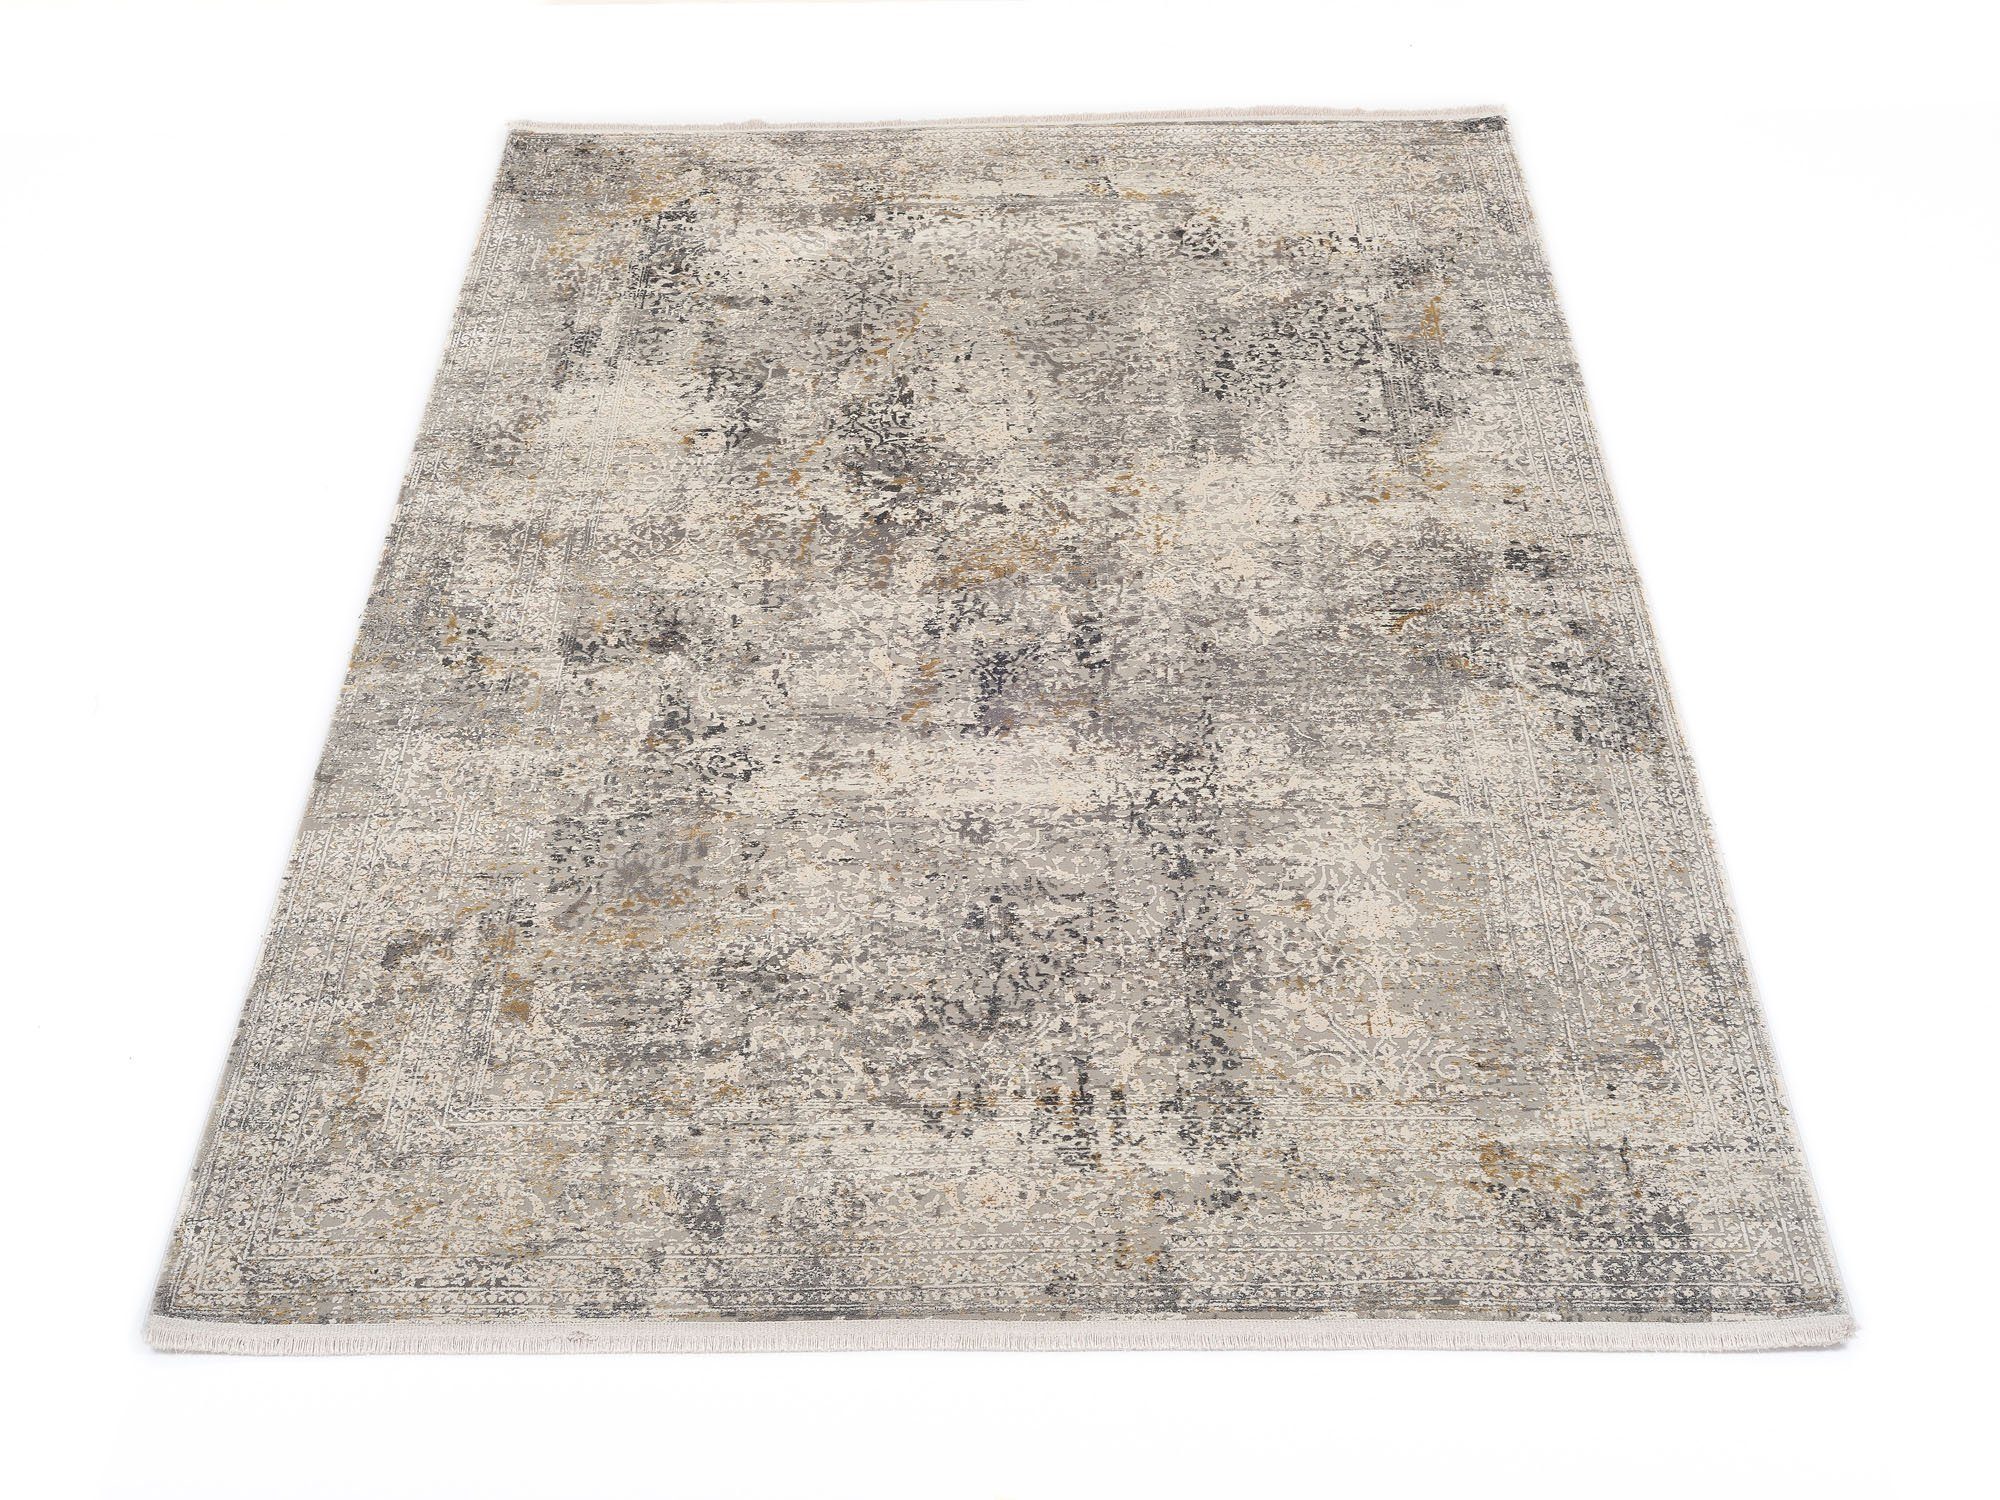 Vintage-Teppich in grau online kaufen | OTTO